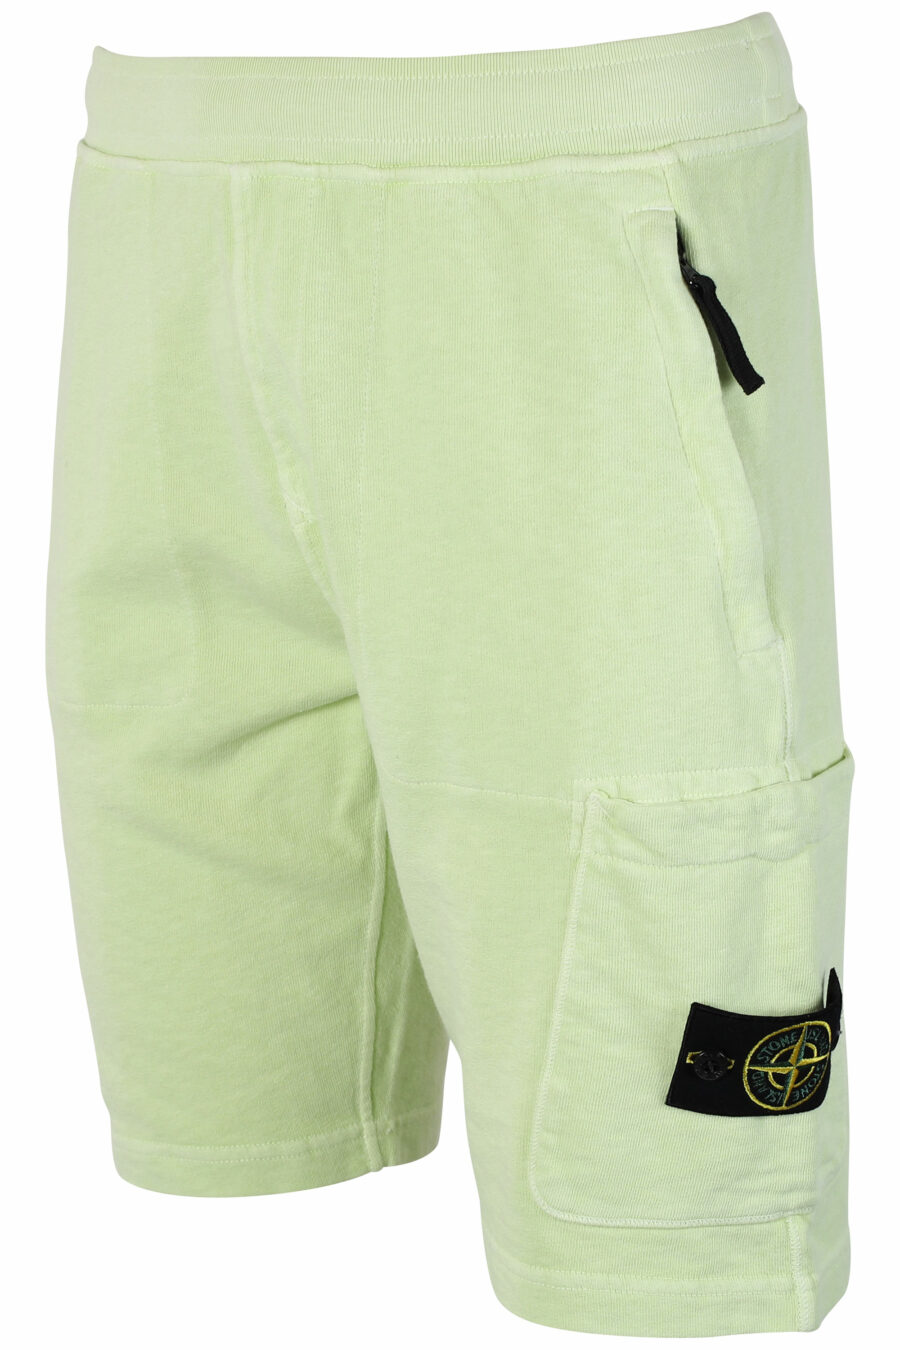 Pantalón de chándal corto verde claro con parche - IMG 9530